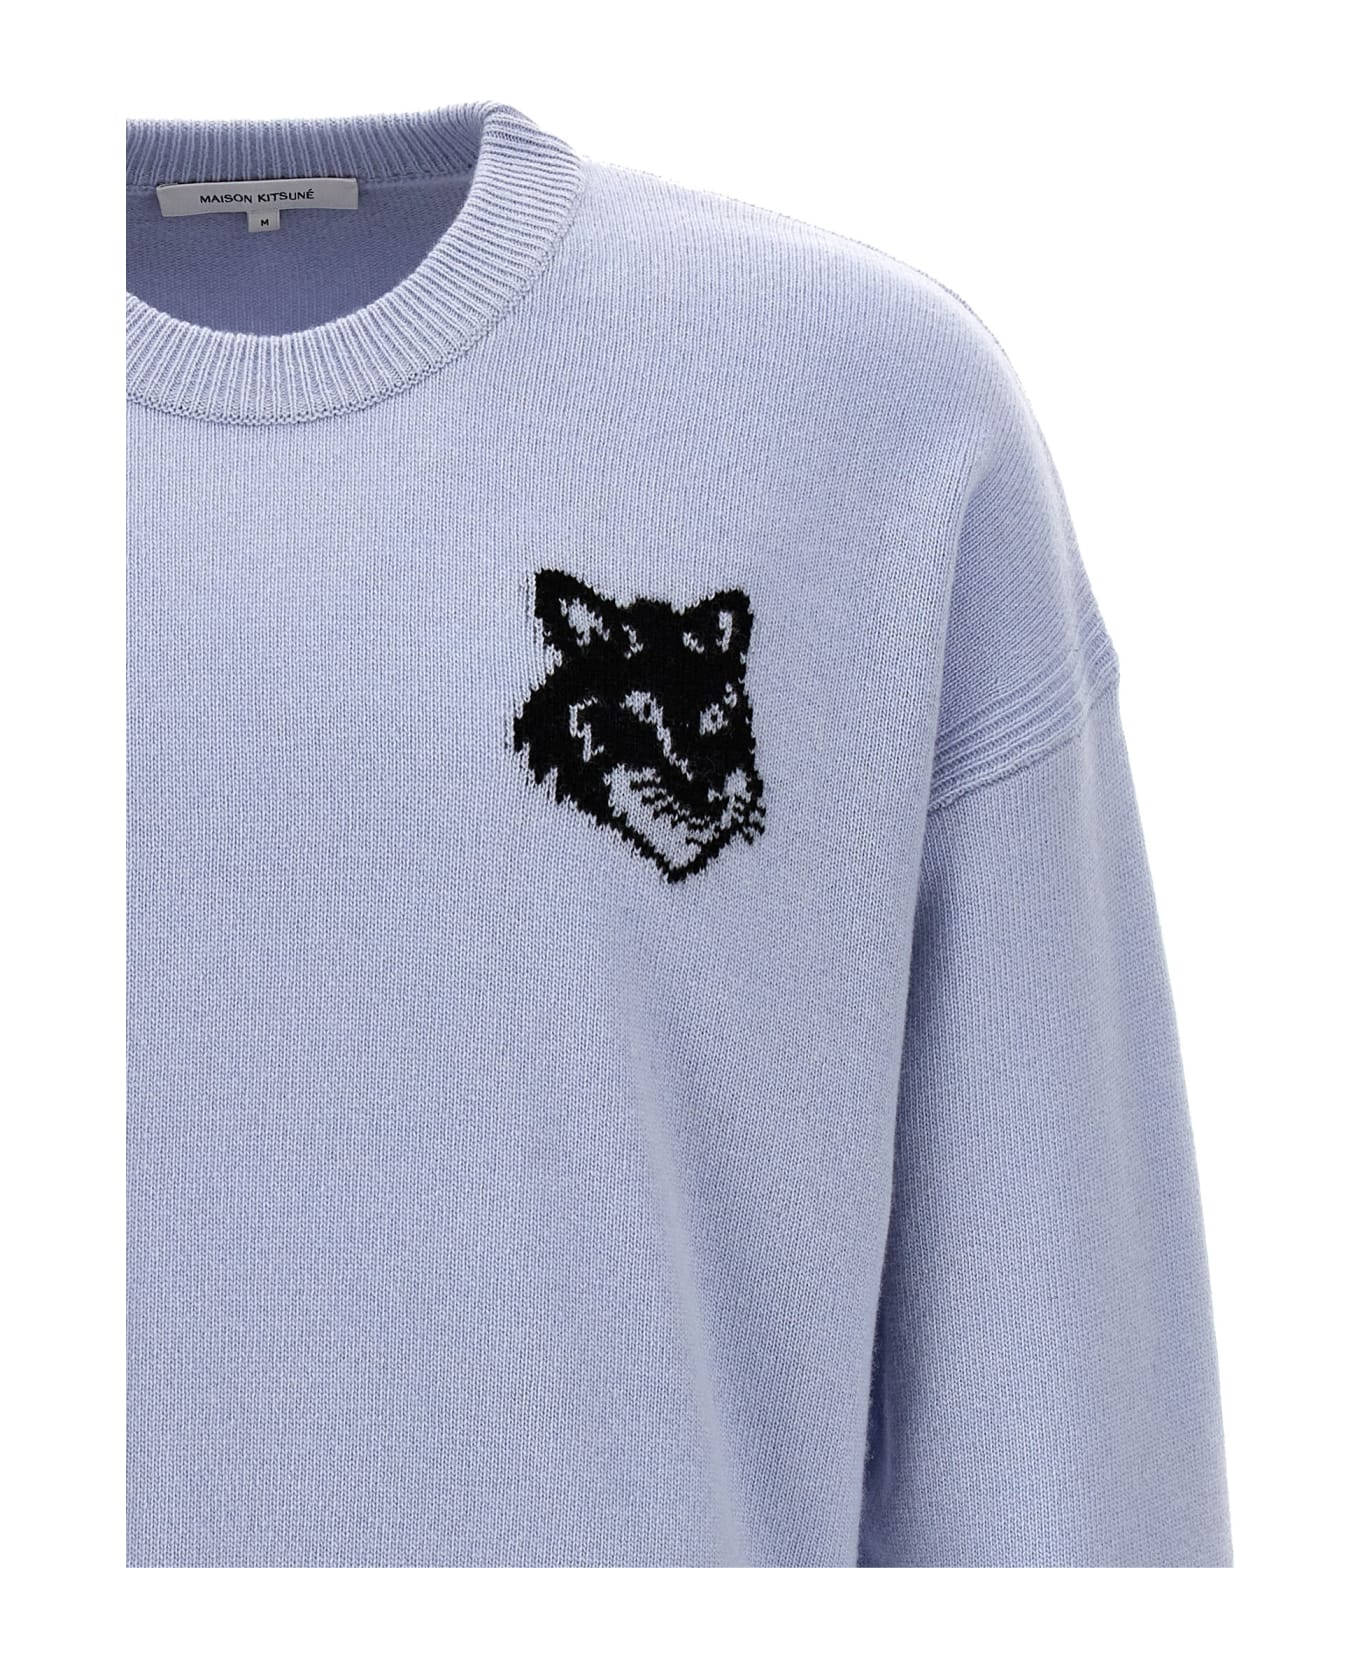 Maison Kitsuné 'fox Head' Sweater - Light Blue ニットウェア